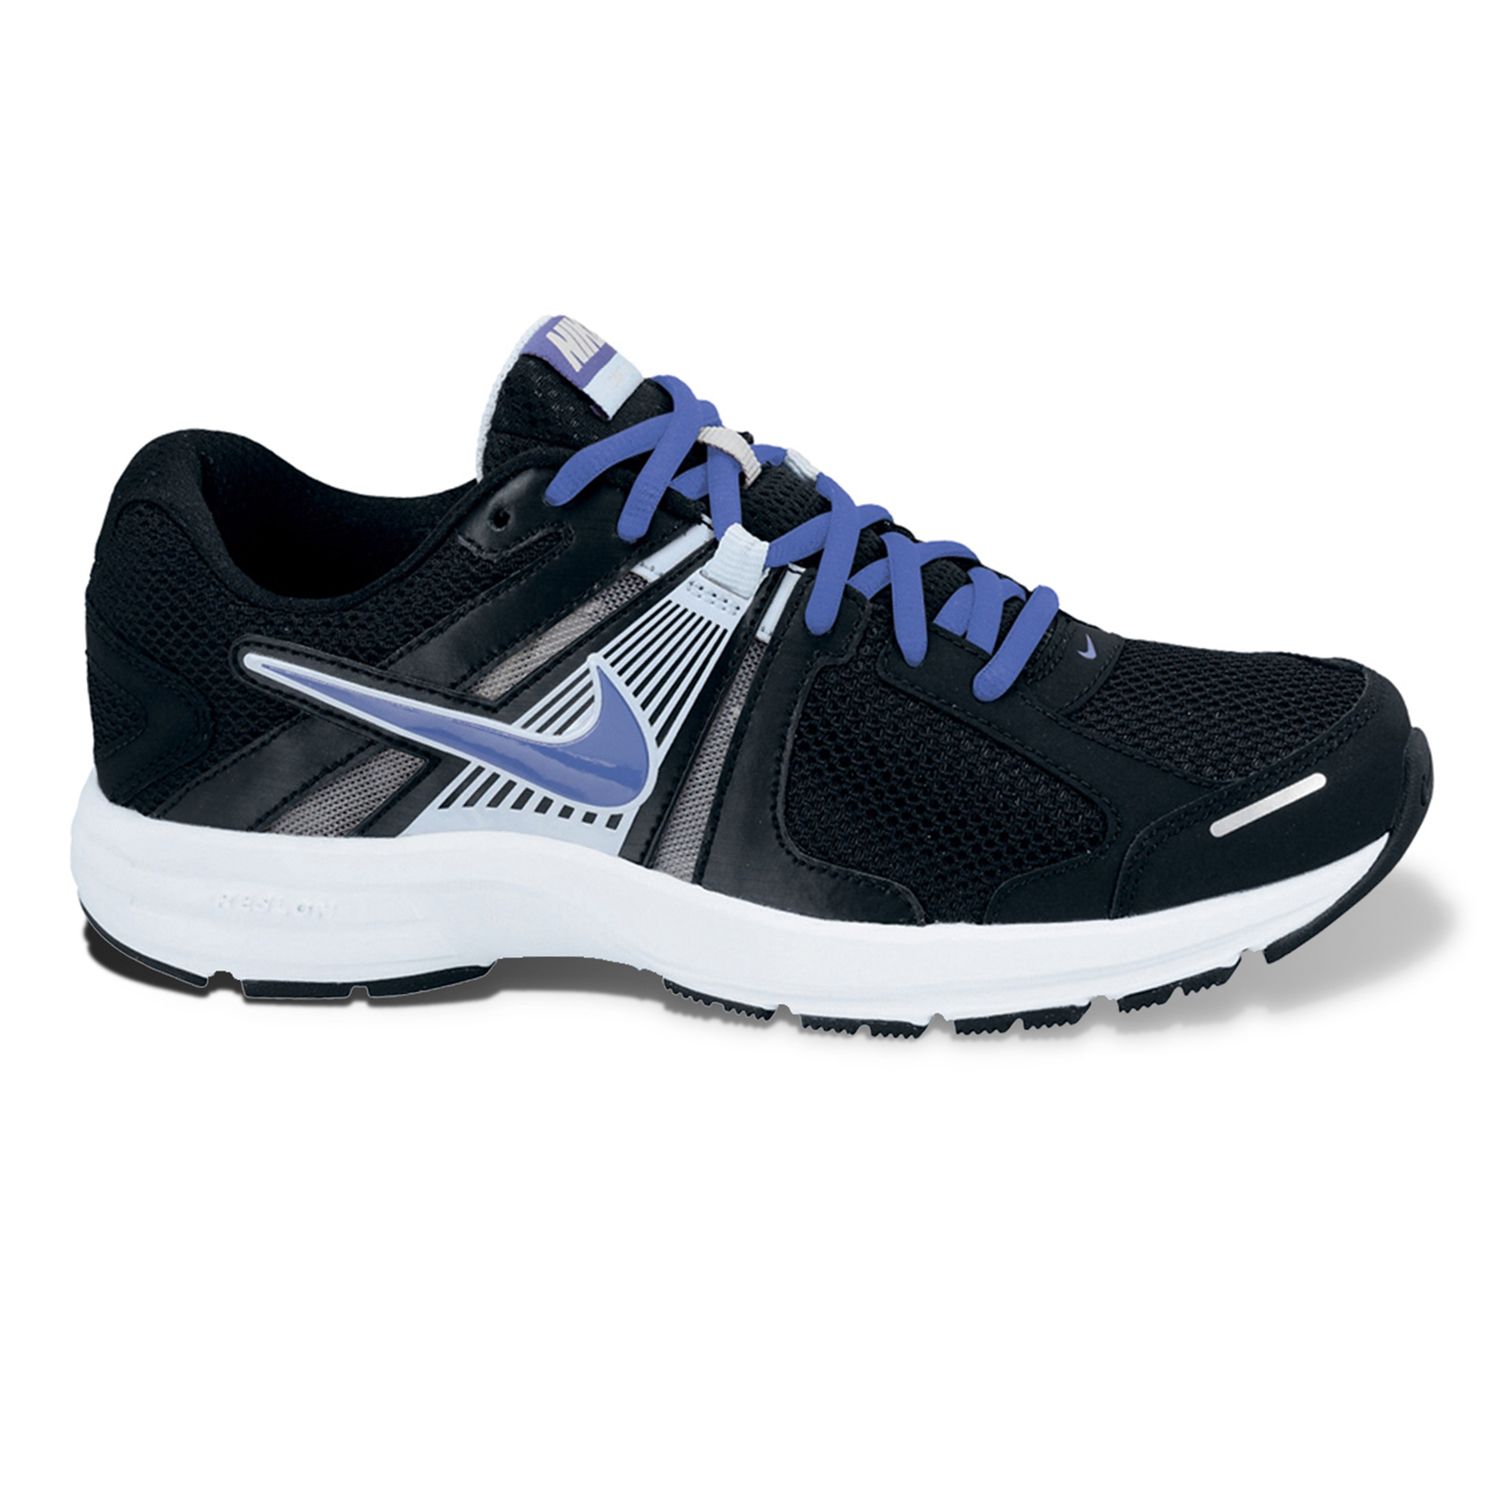 Nike Dart 10 Running Shoes - Women